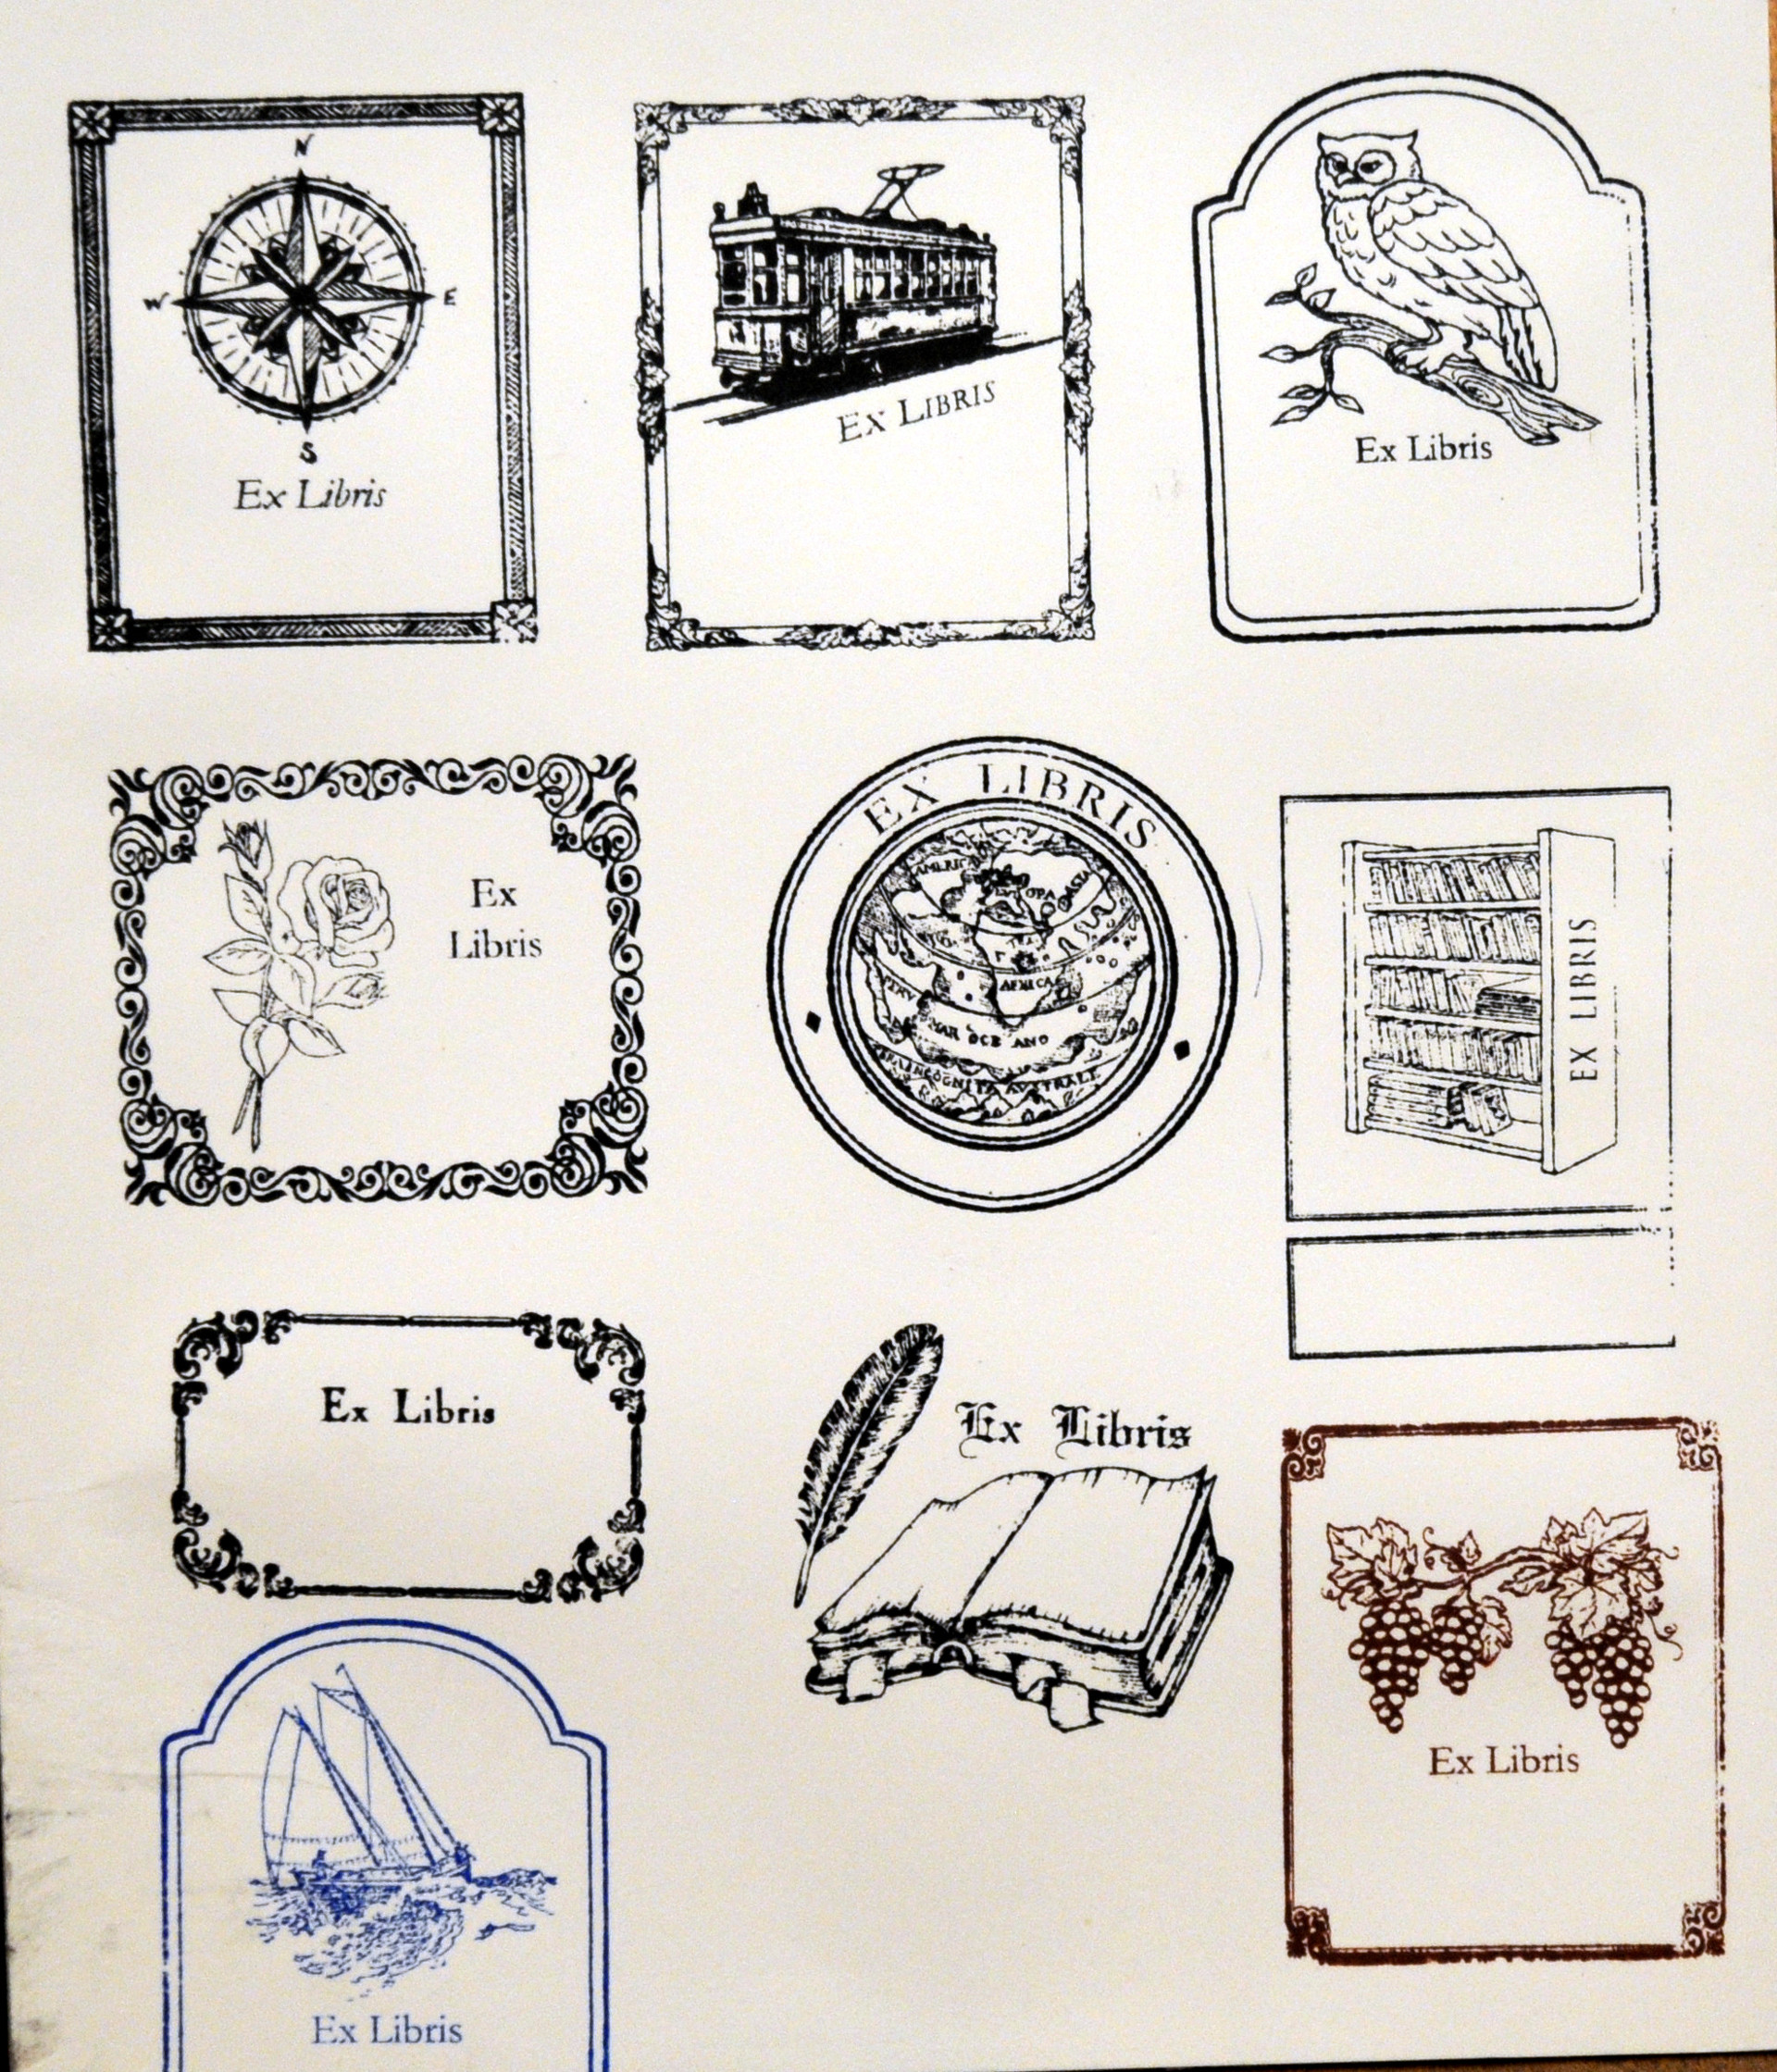 Ecco alcuni dei disegni per ex libris - Laboratorio Timbri